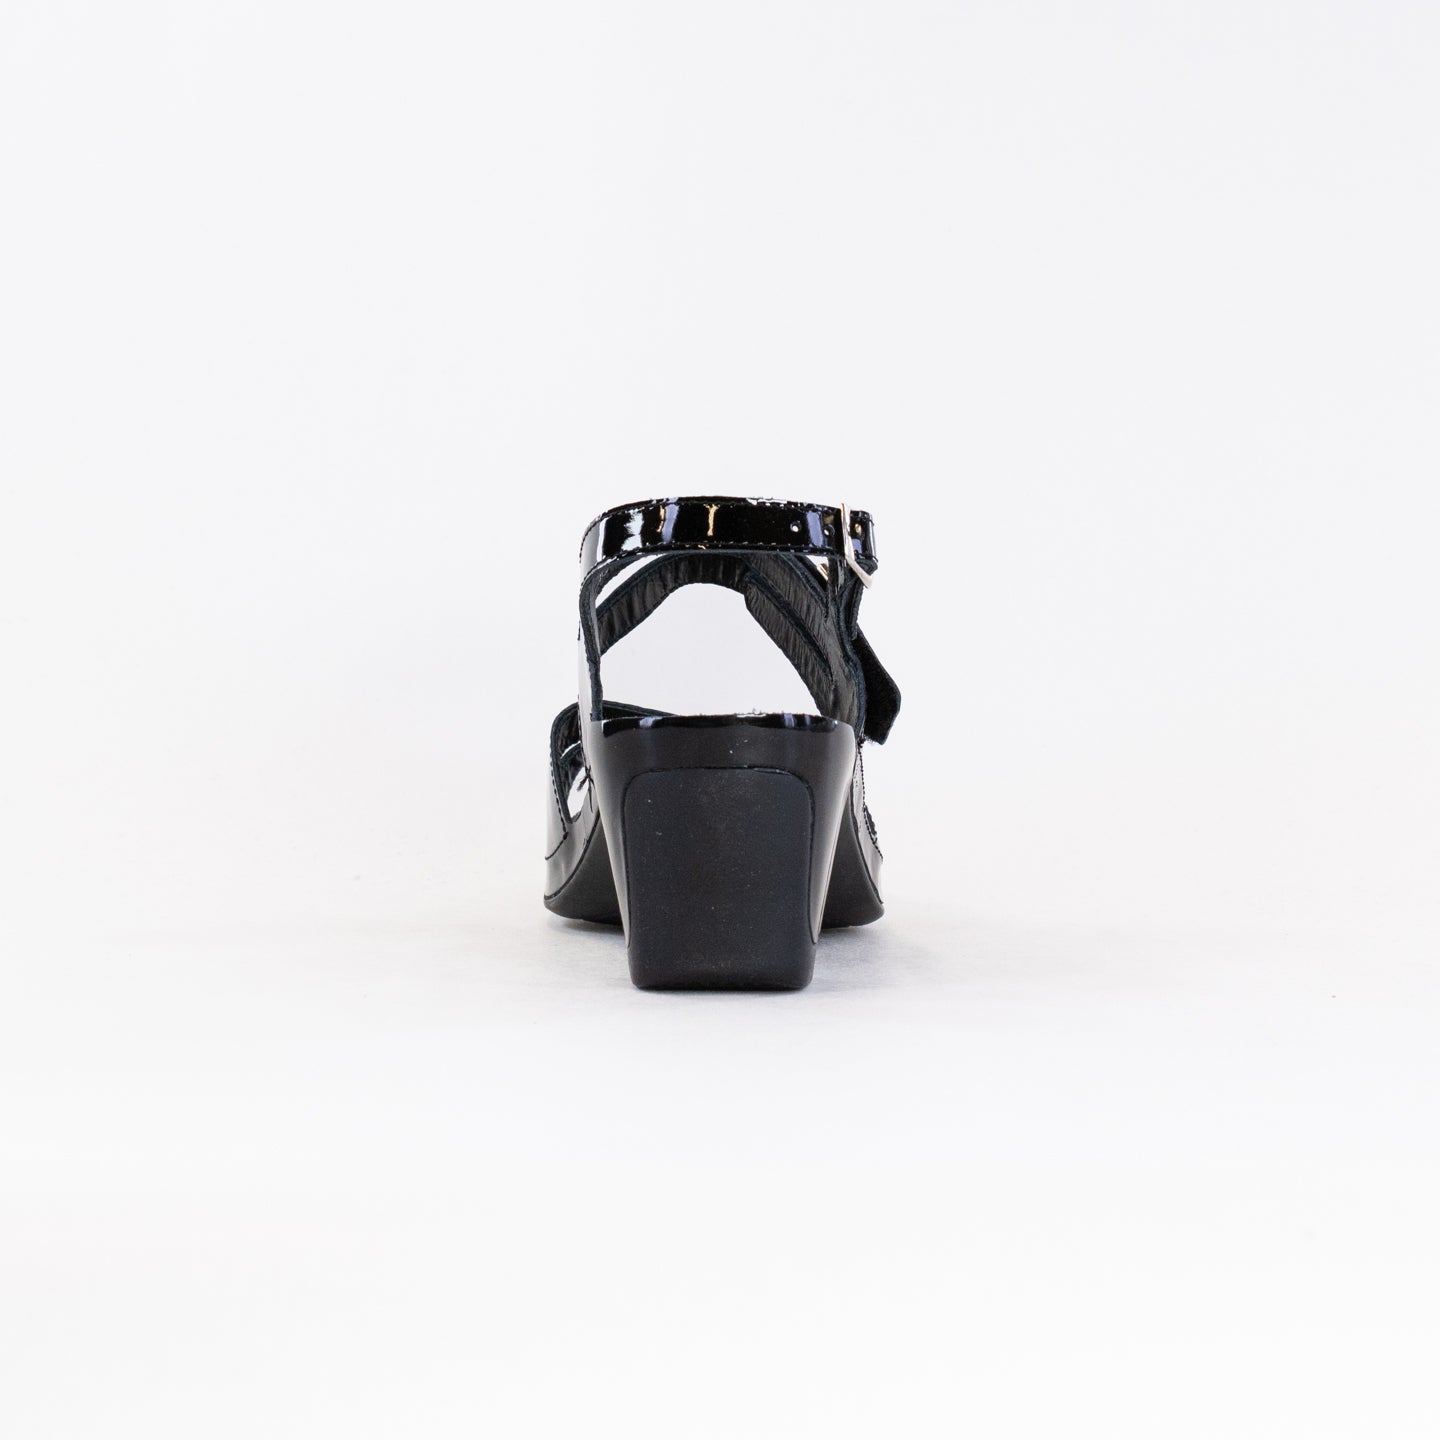 Vital Joy Sandal (Women's) - Black Patent Leather